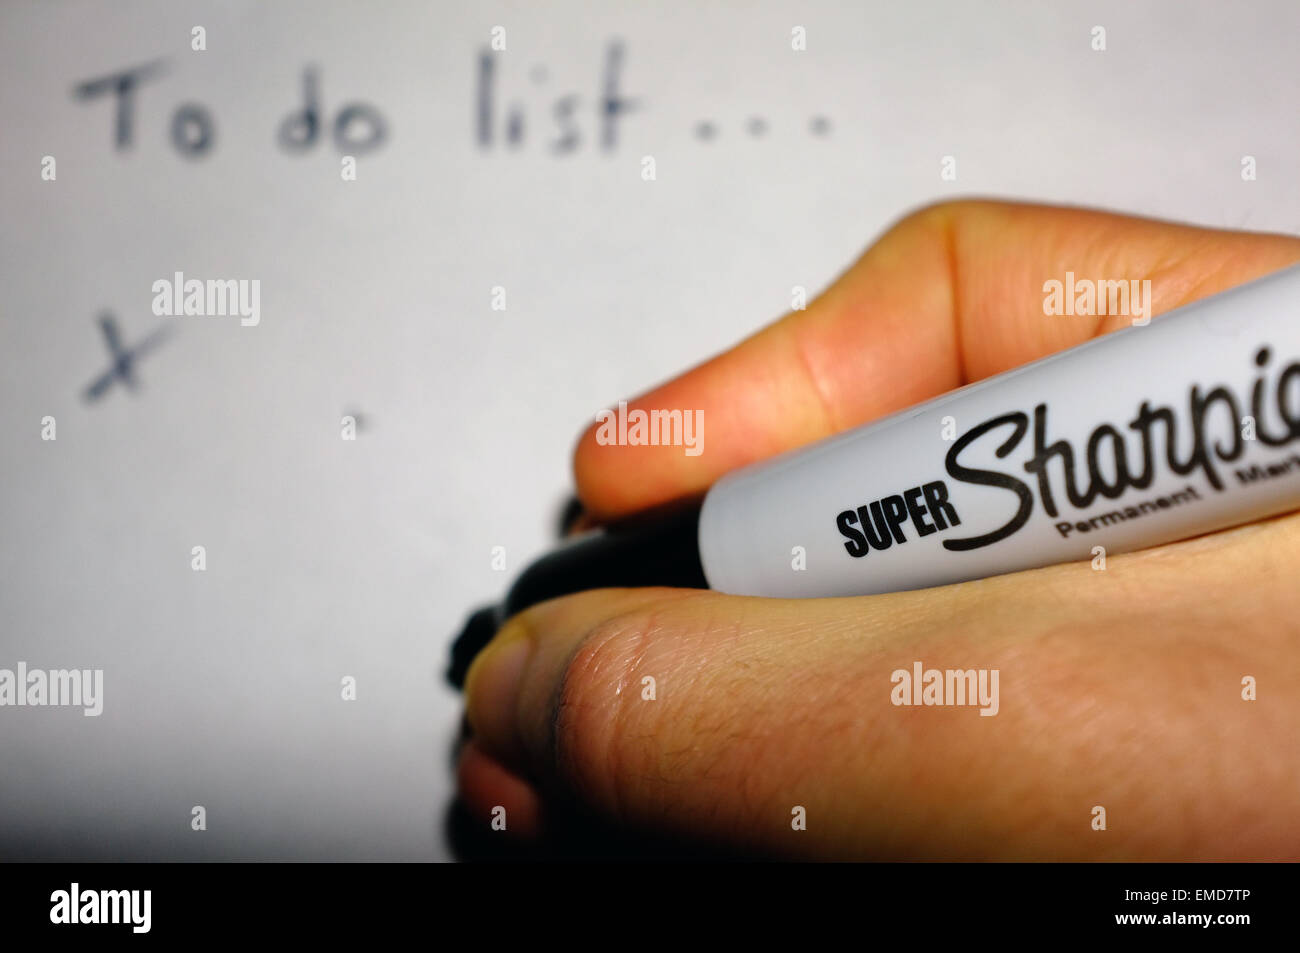 Una mano bianca tenendo un pennarello indelebile Sharpie pen scrivendo un 'Lista da fare su un foglio di carta. Foto Stock